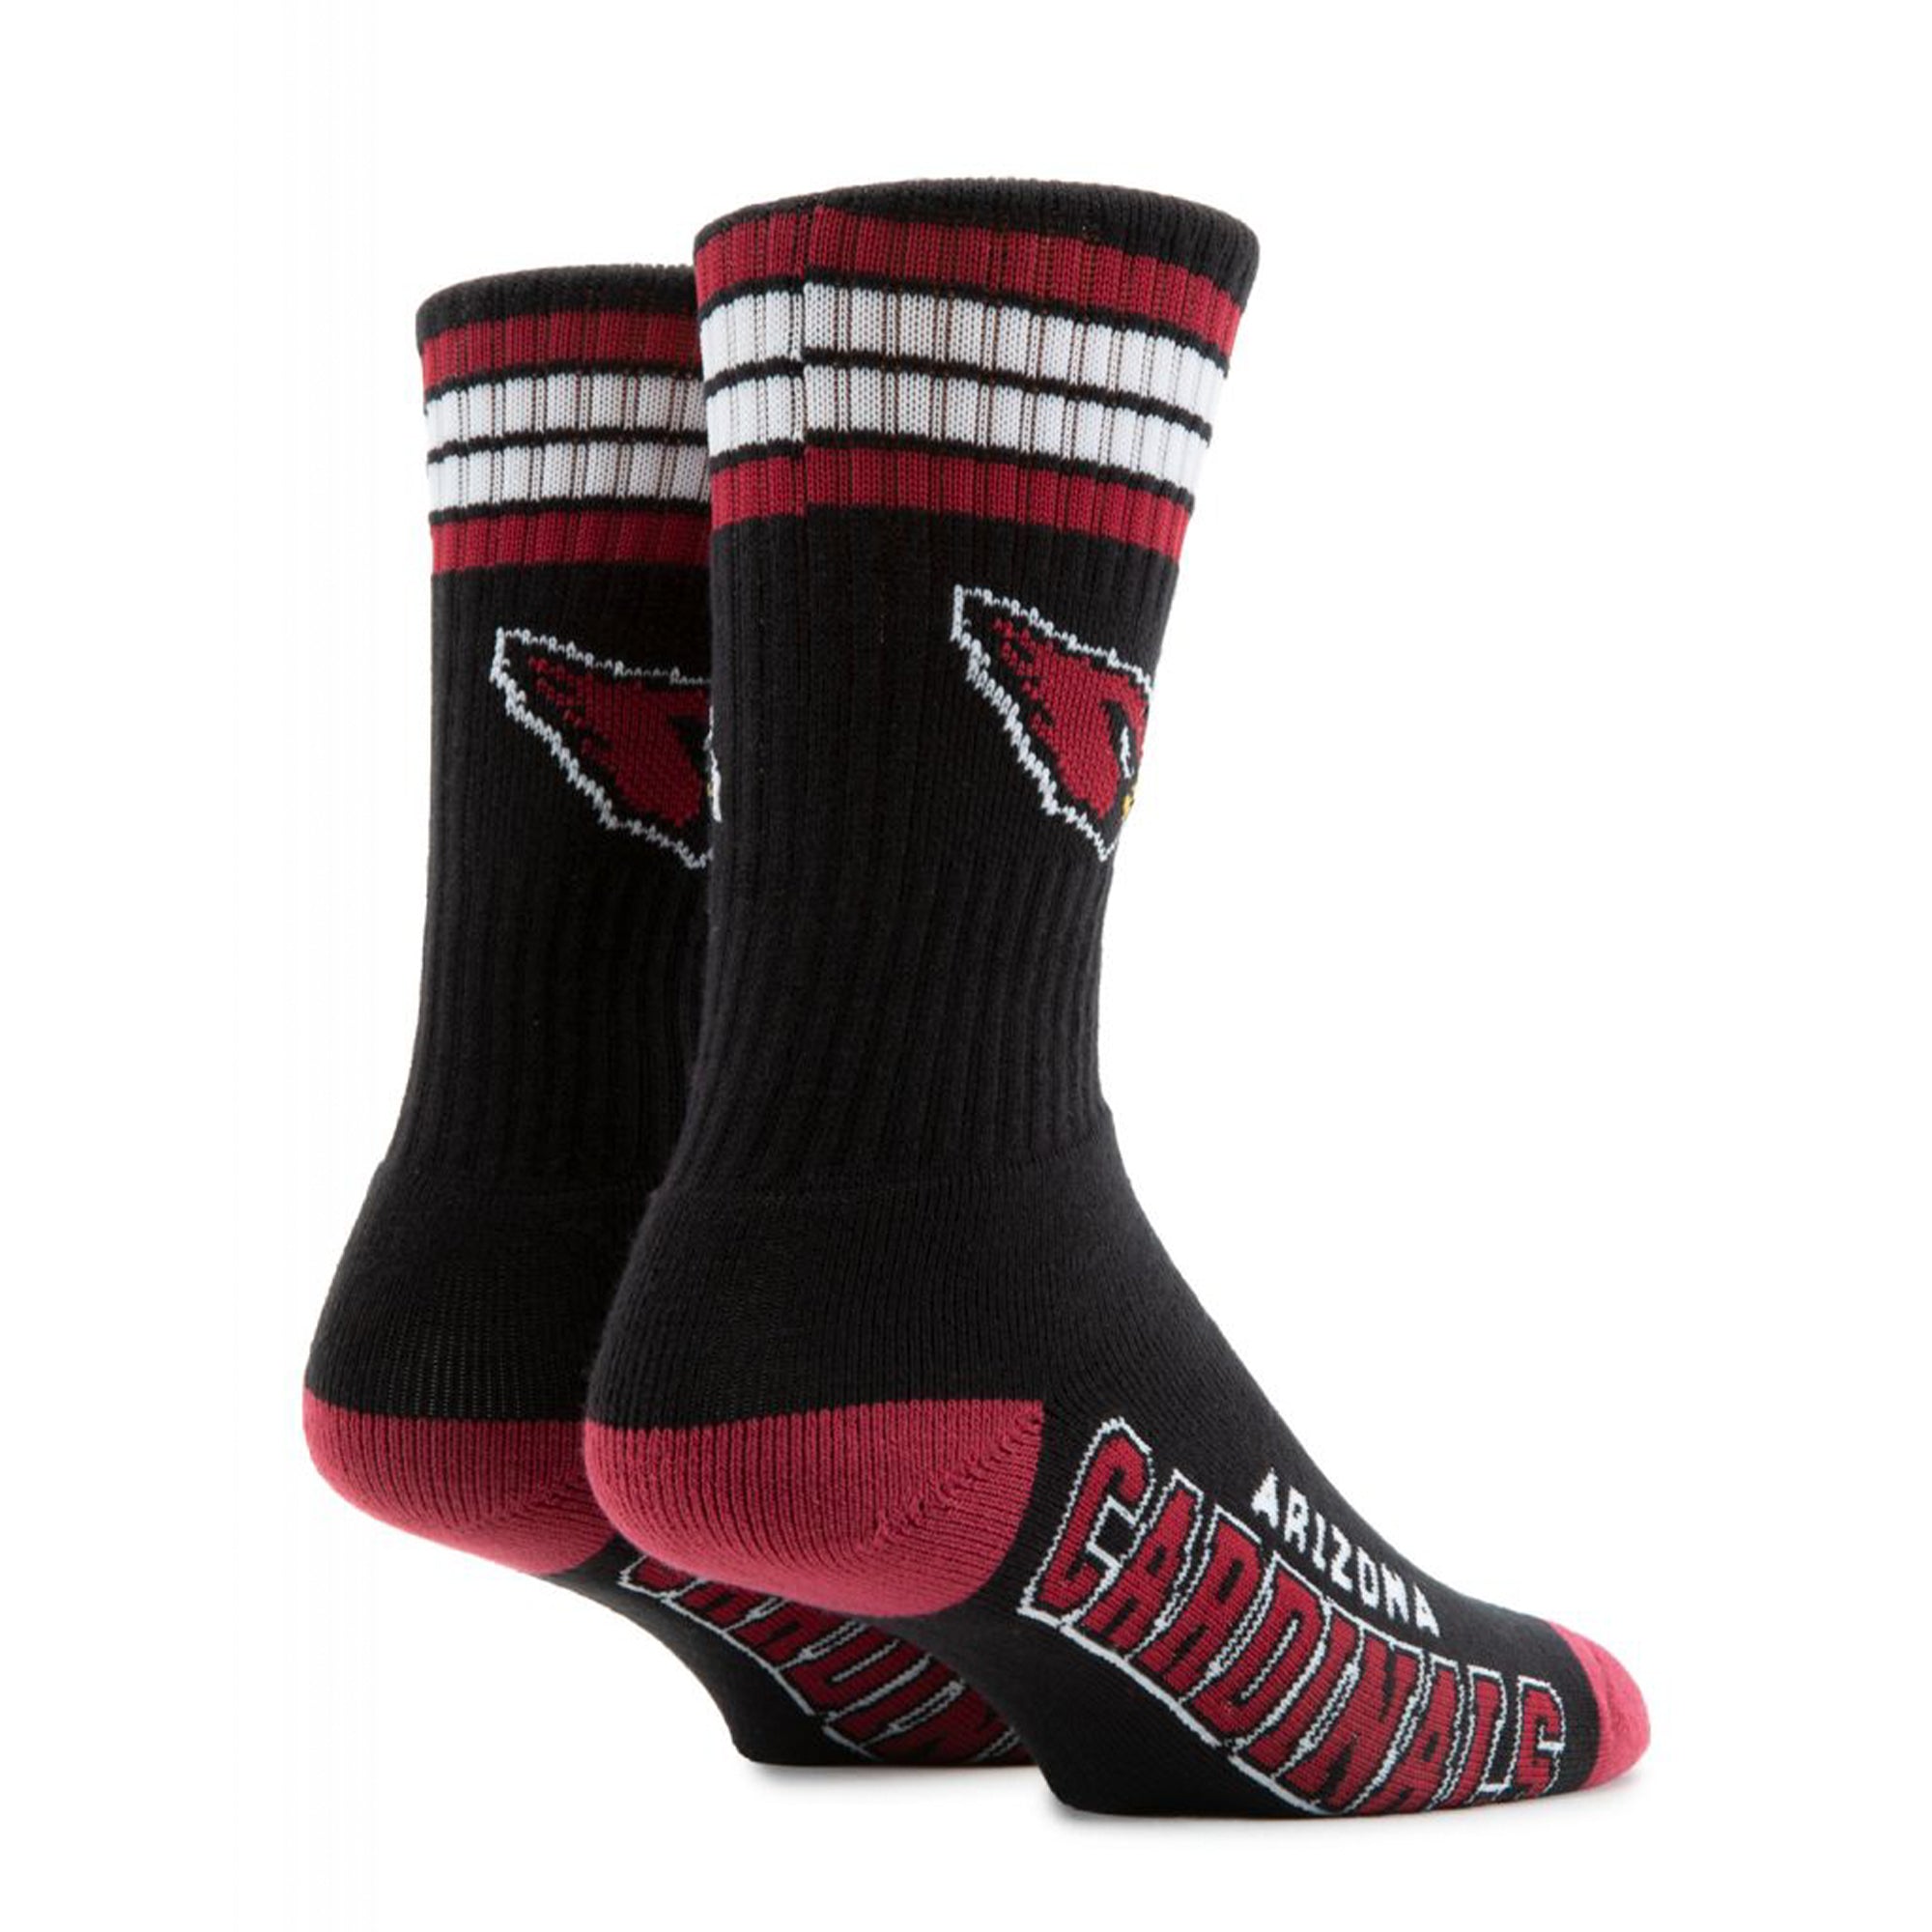 For Bare Feet Men Arizona Cardinals Socks (Cardinals)-Cardinals-Large-Nexus Clothing